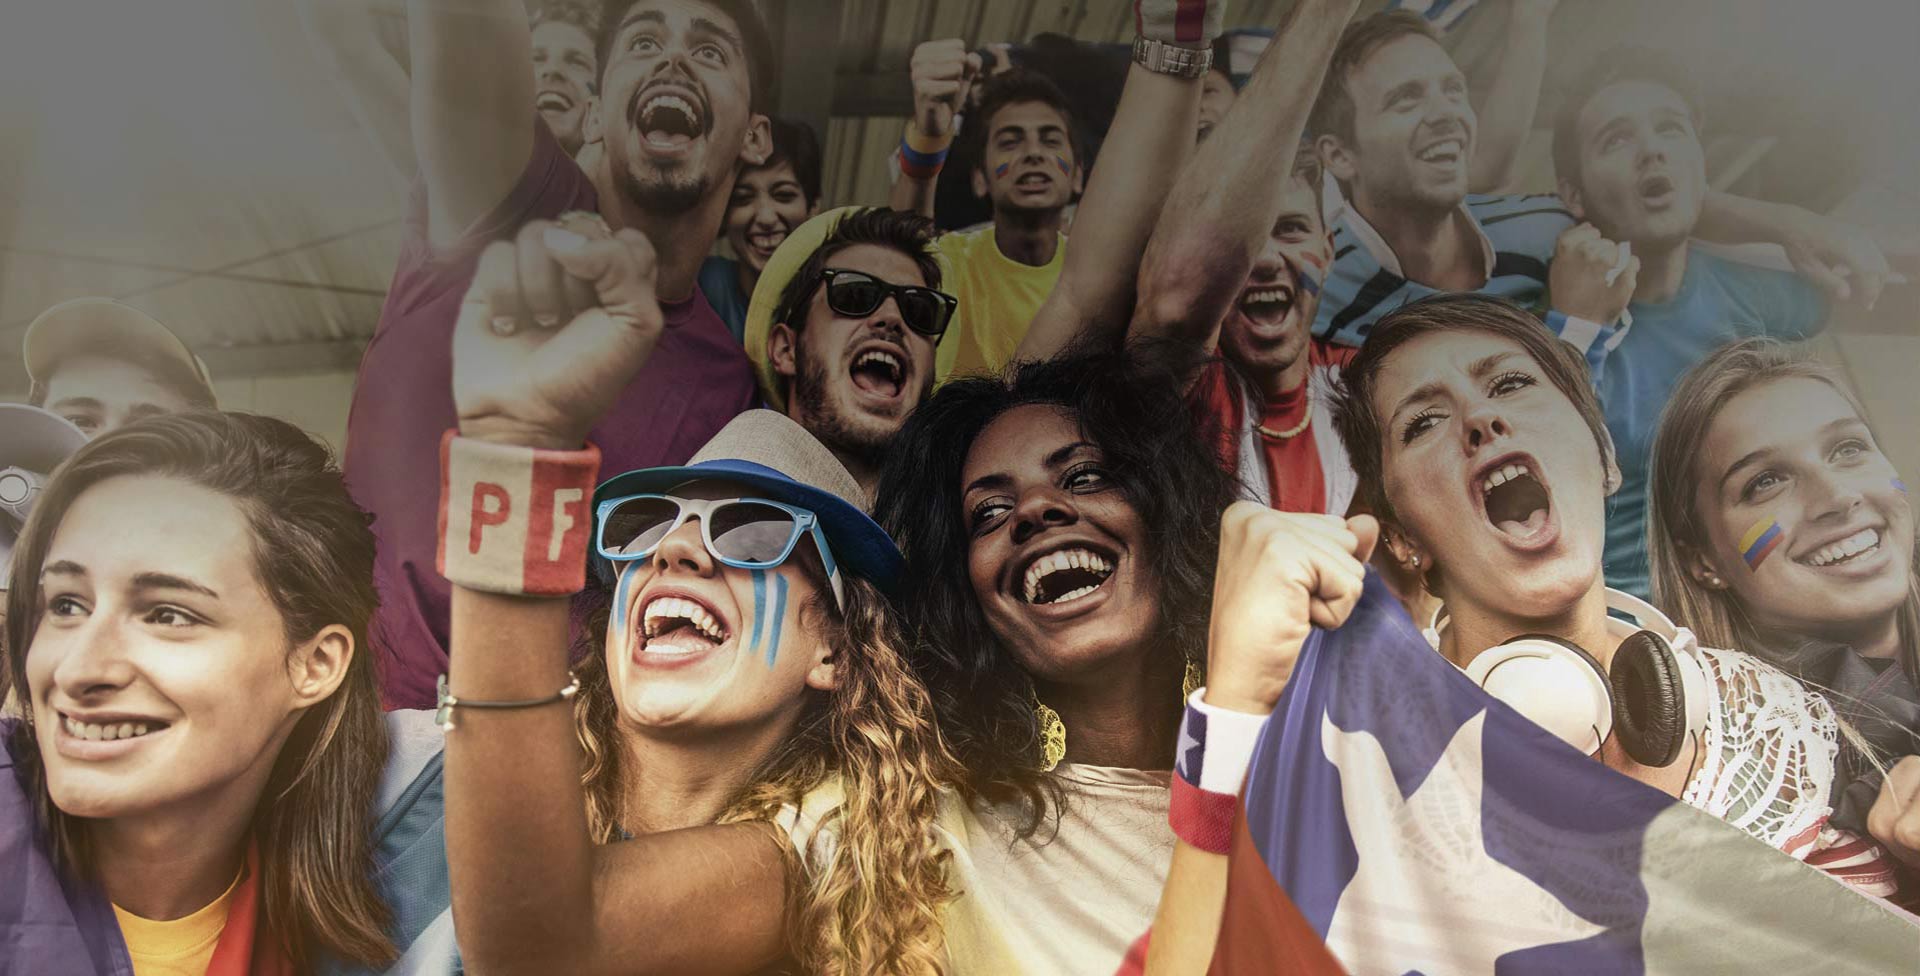 BBVA lanza una campaña para los fanáticos: “Fútbol Non Stop”